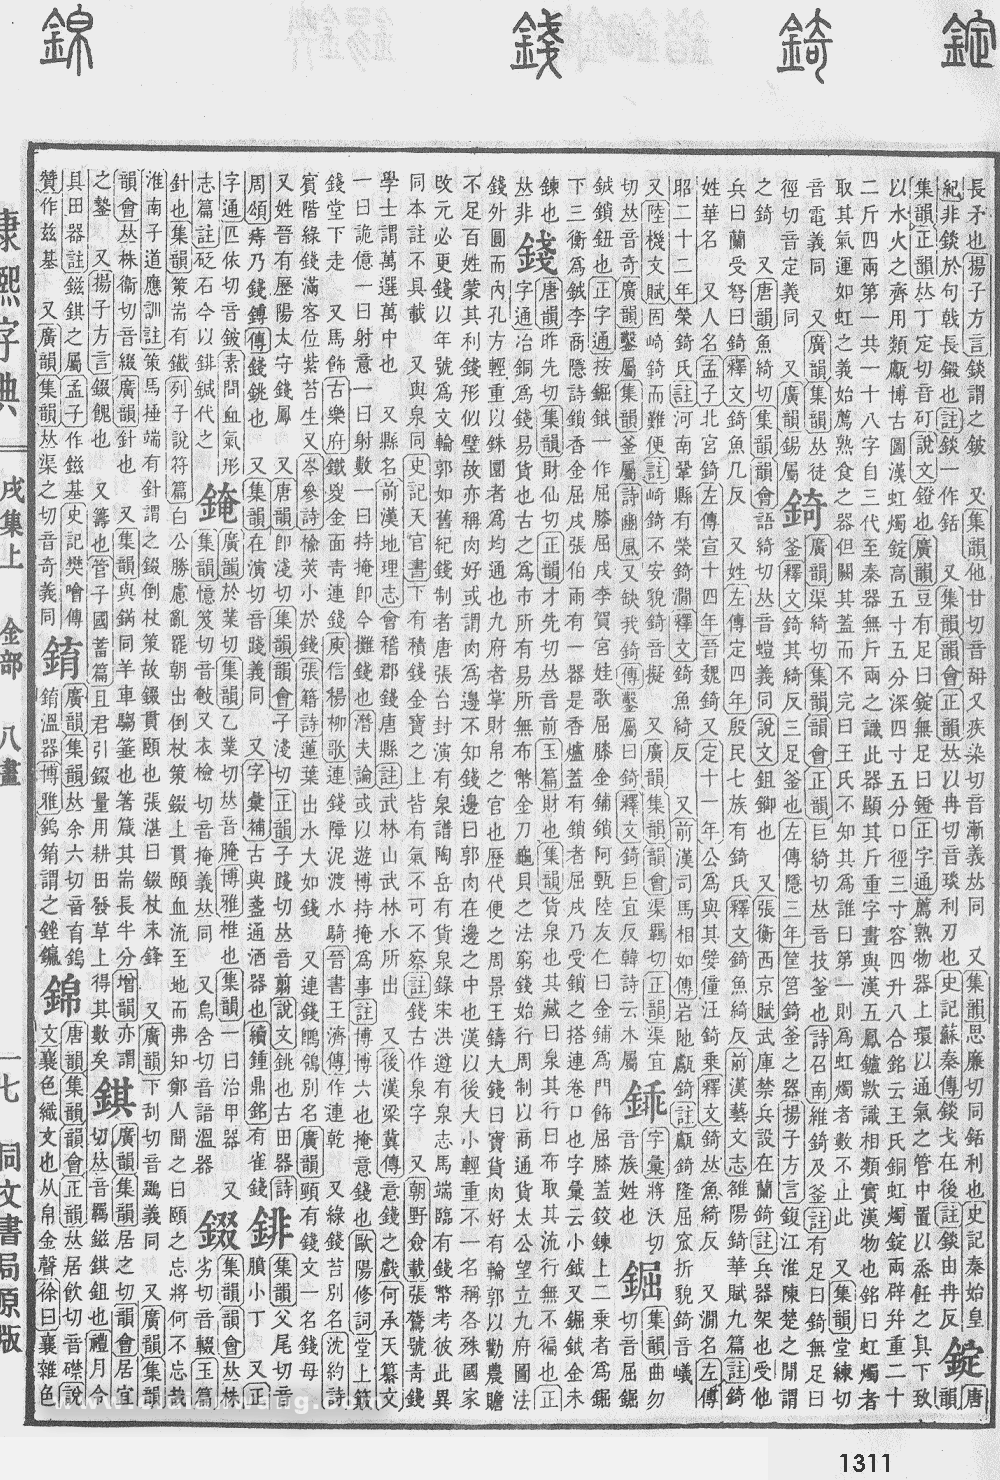 康熙字典掃描版第1311頁